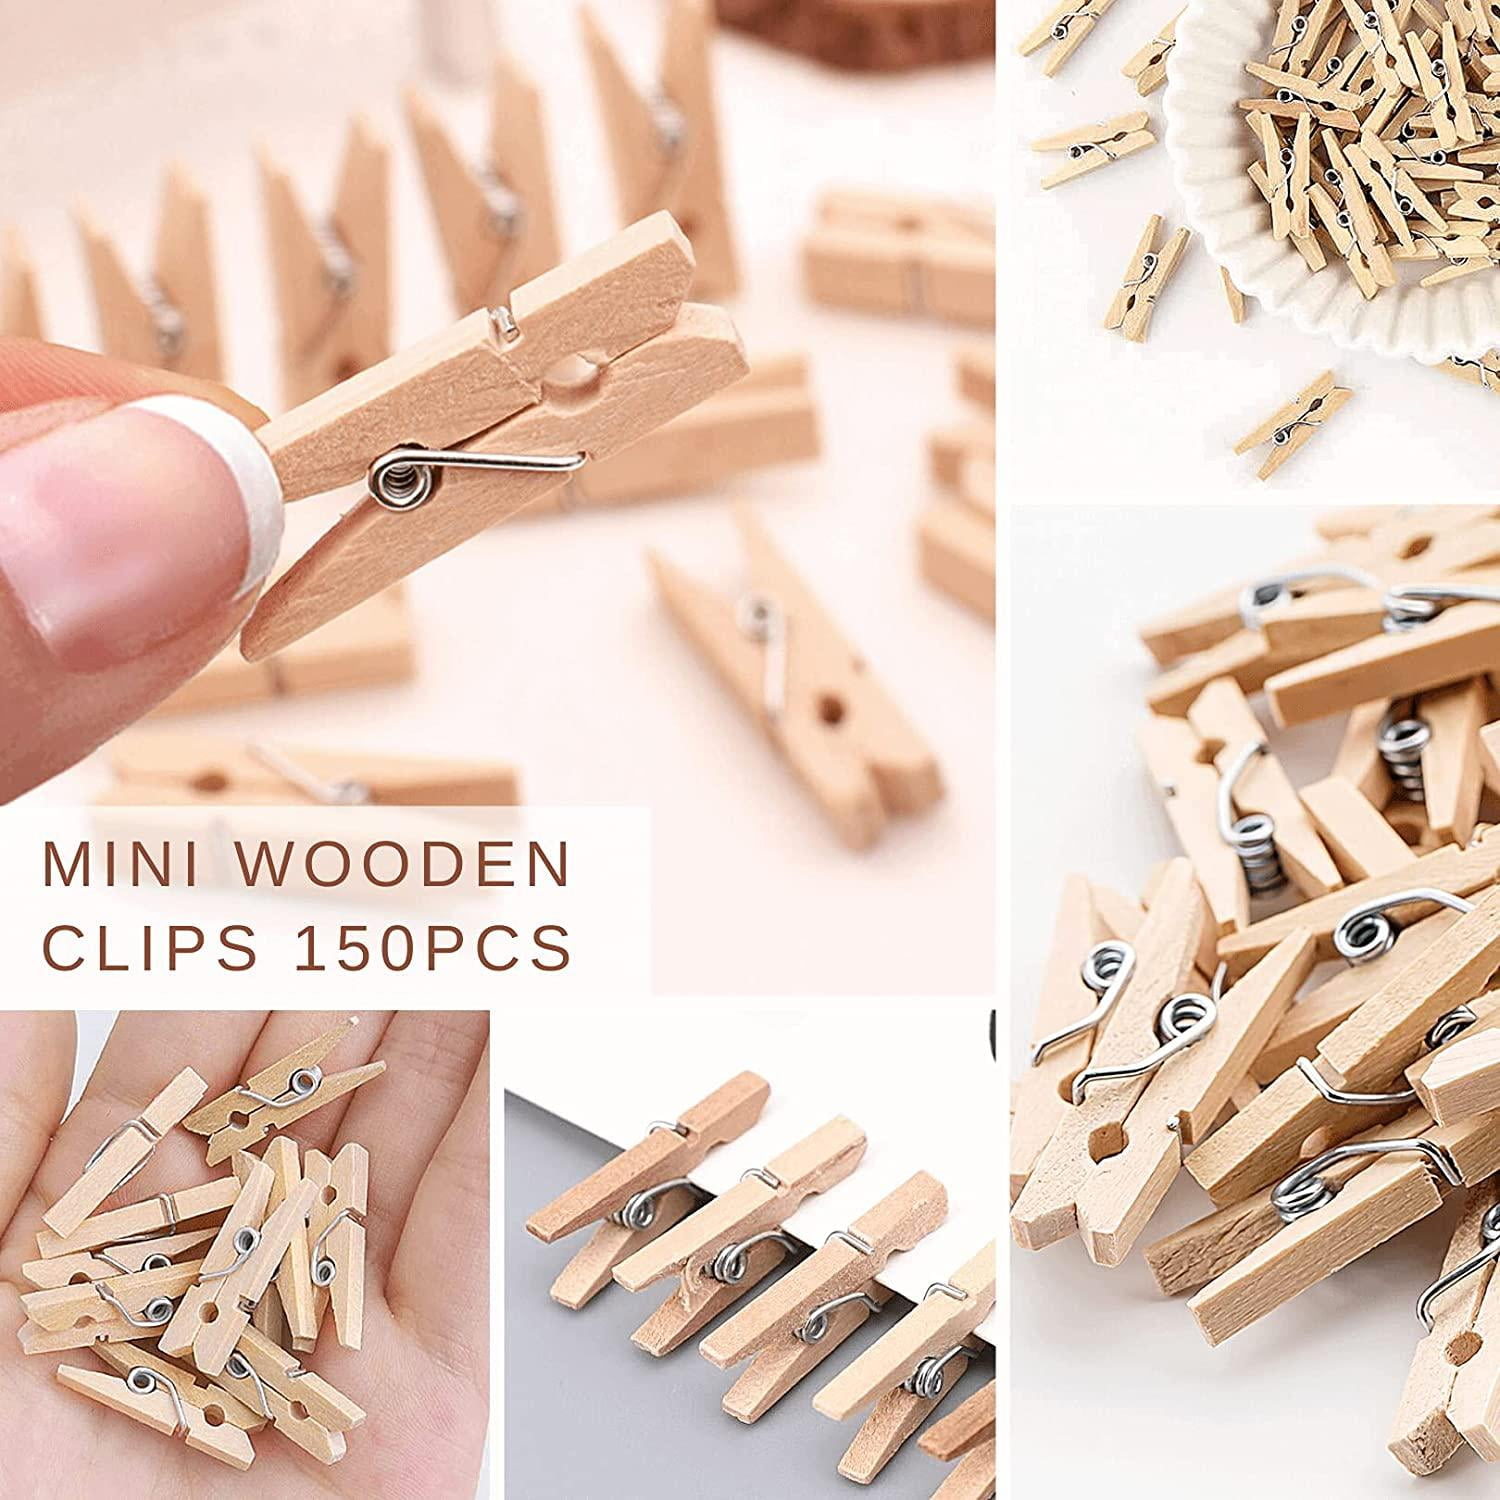 Mini Wood Clothespins-Natural 1.1875 40/Pkg